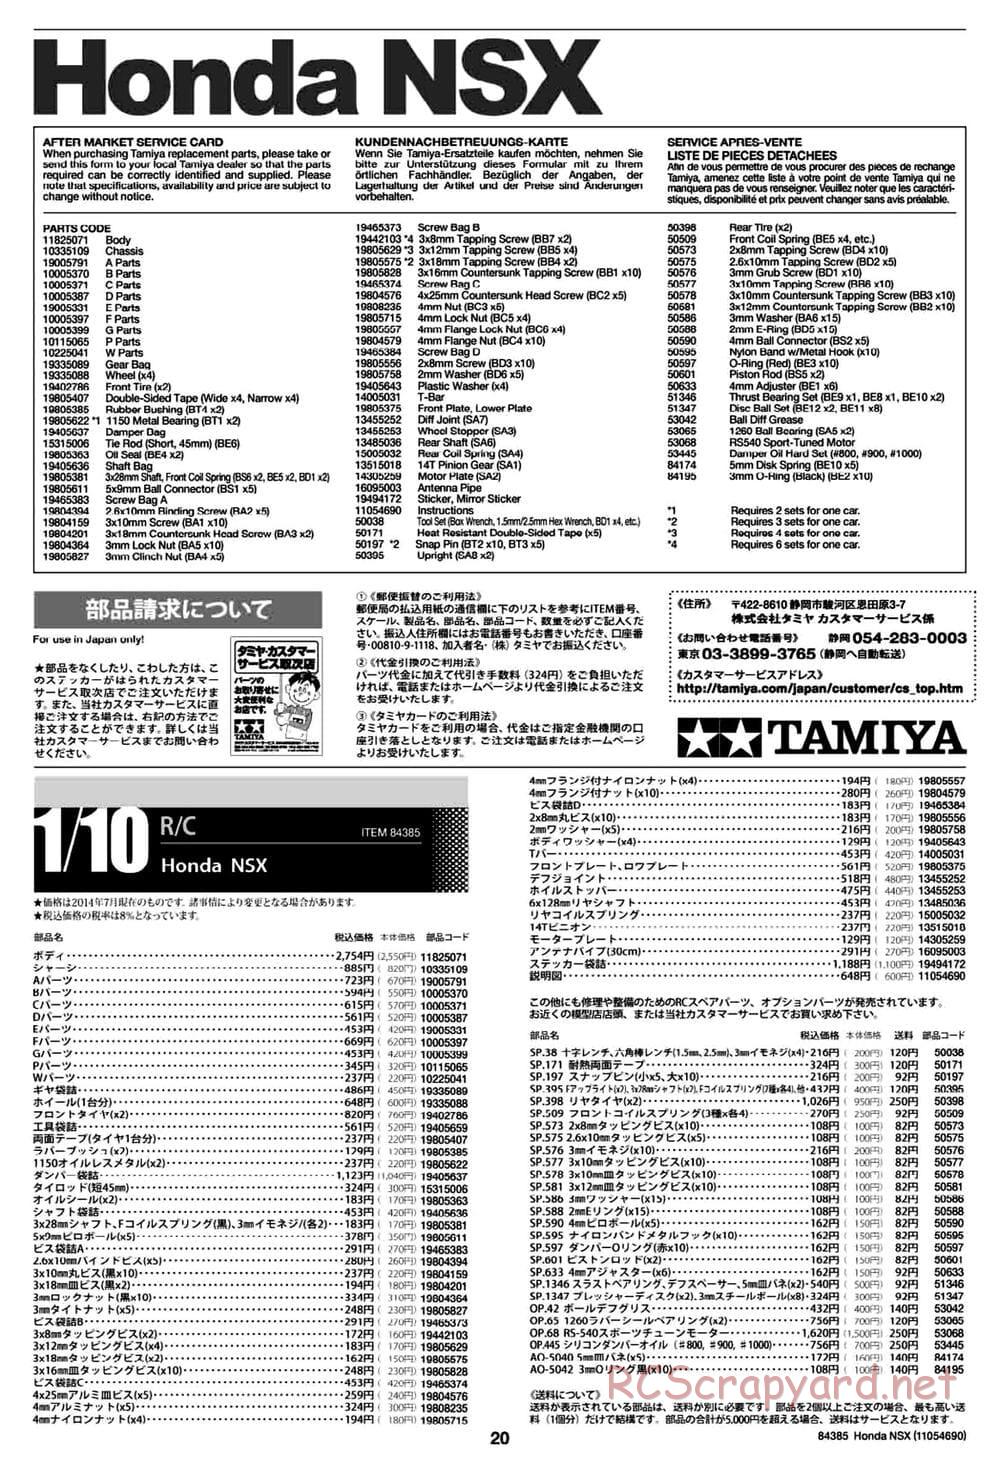 Tamiya - Honda NSX - Group-C Chassis - Manual - Page 20